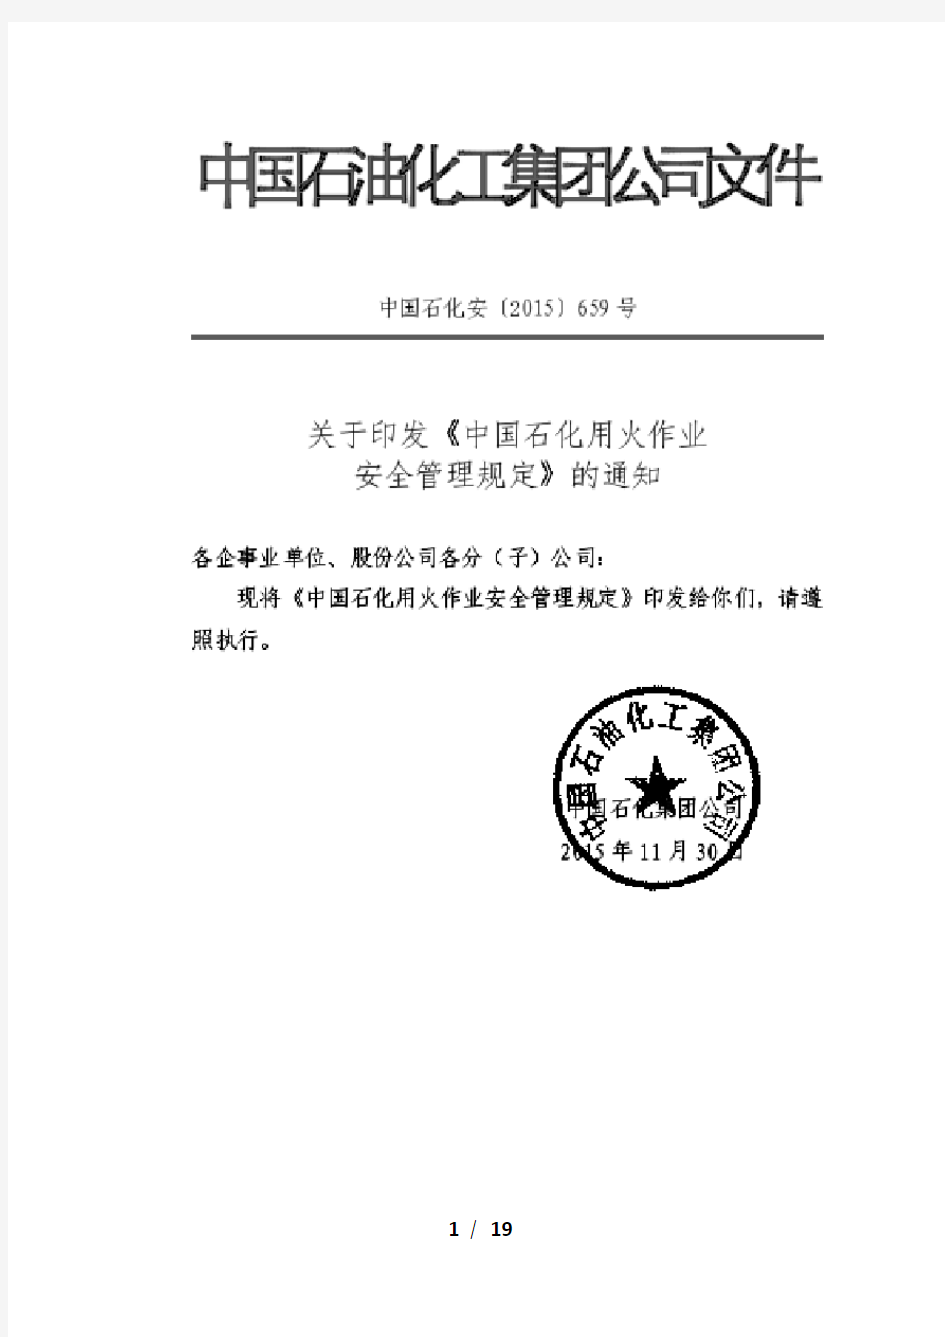 中国石化用火作业安全管理规定(中国石化安〔2015〕659号)